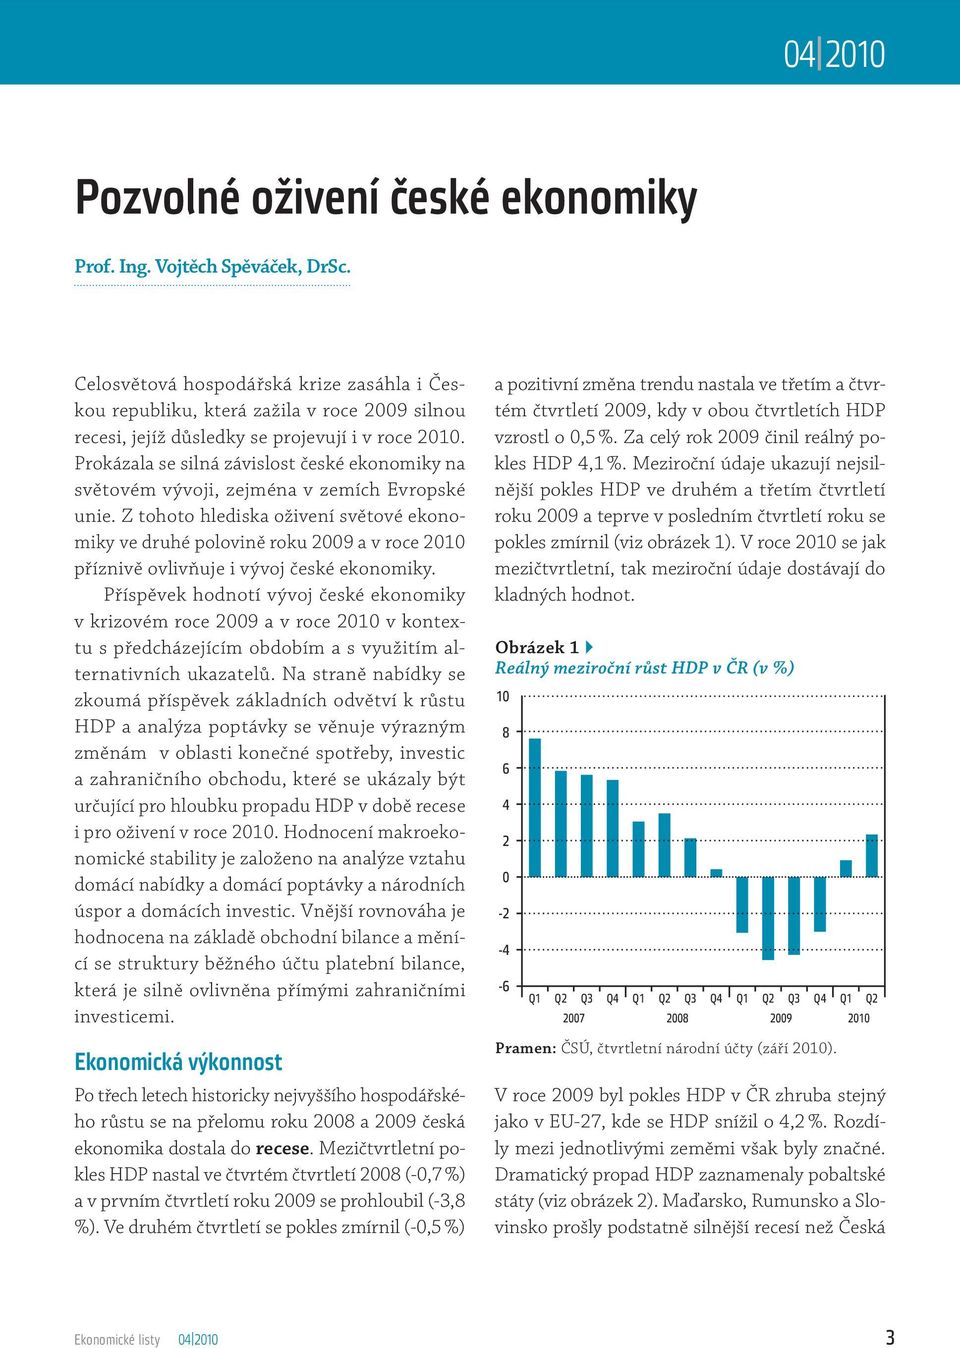 Prokázala se silná závislost české ekonomiky na světovém vývoji, zejména v zemích Evropské unie.